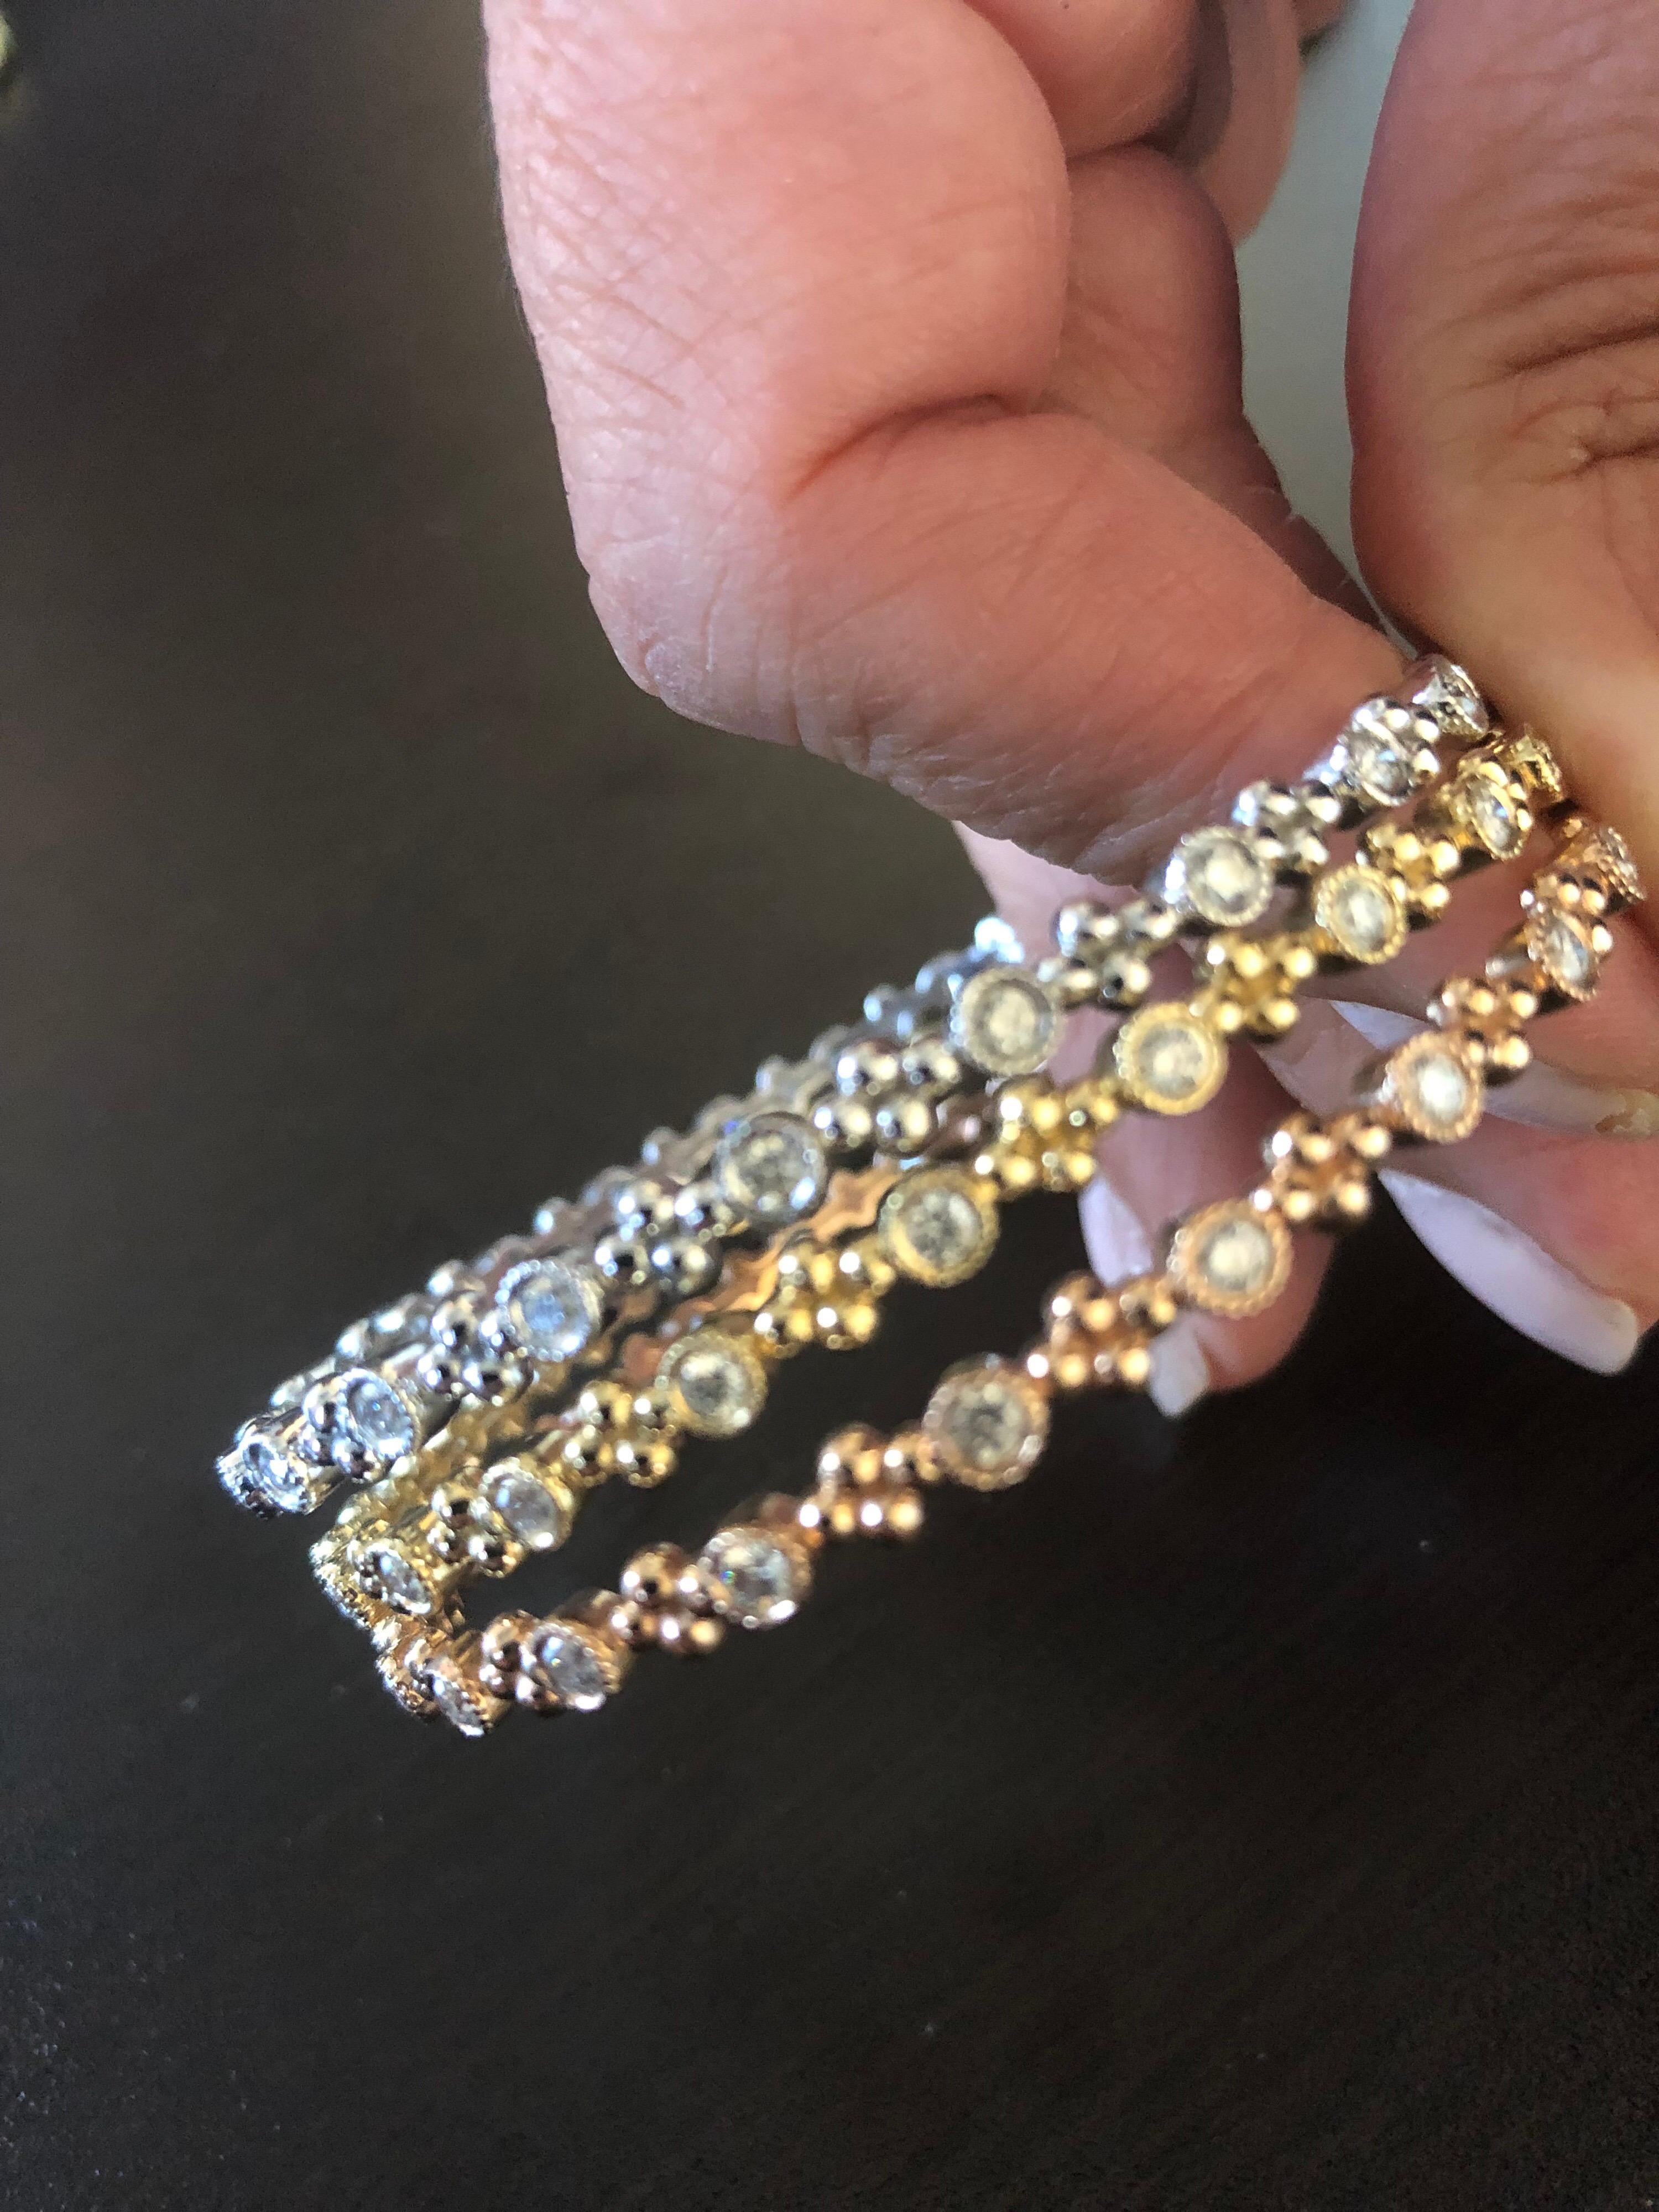 Les bracelets en diamant à enfiler sont vendus individuellement. Chaque pierre est sertie dans une lunette gravée. Le poids total en carats de chaque bracelet est de 1,15. La couleur des pierres est G-H, la clarté est SI1-SI2. Les bracelets mesurent